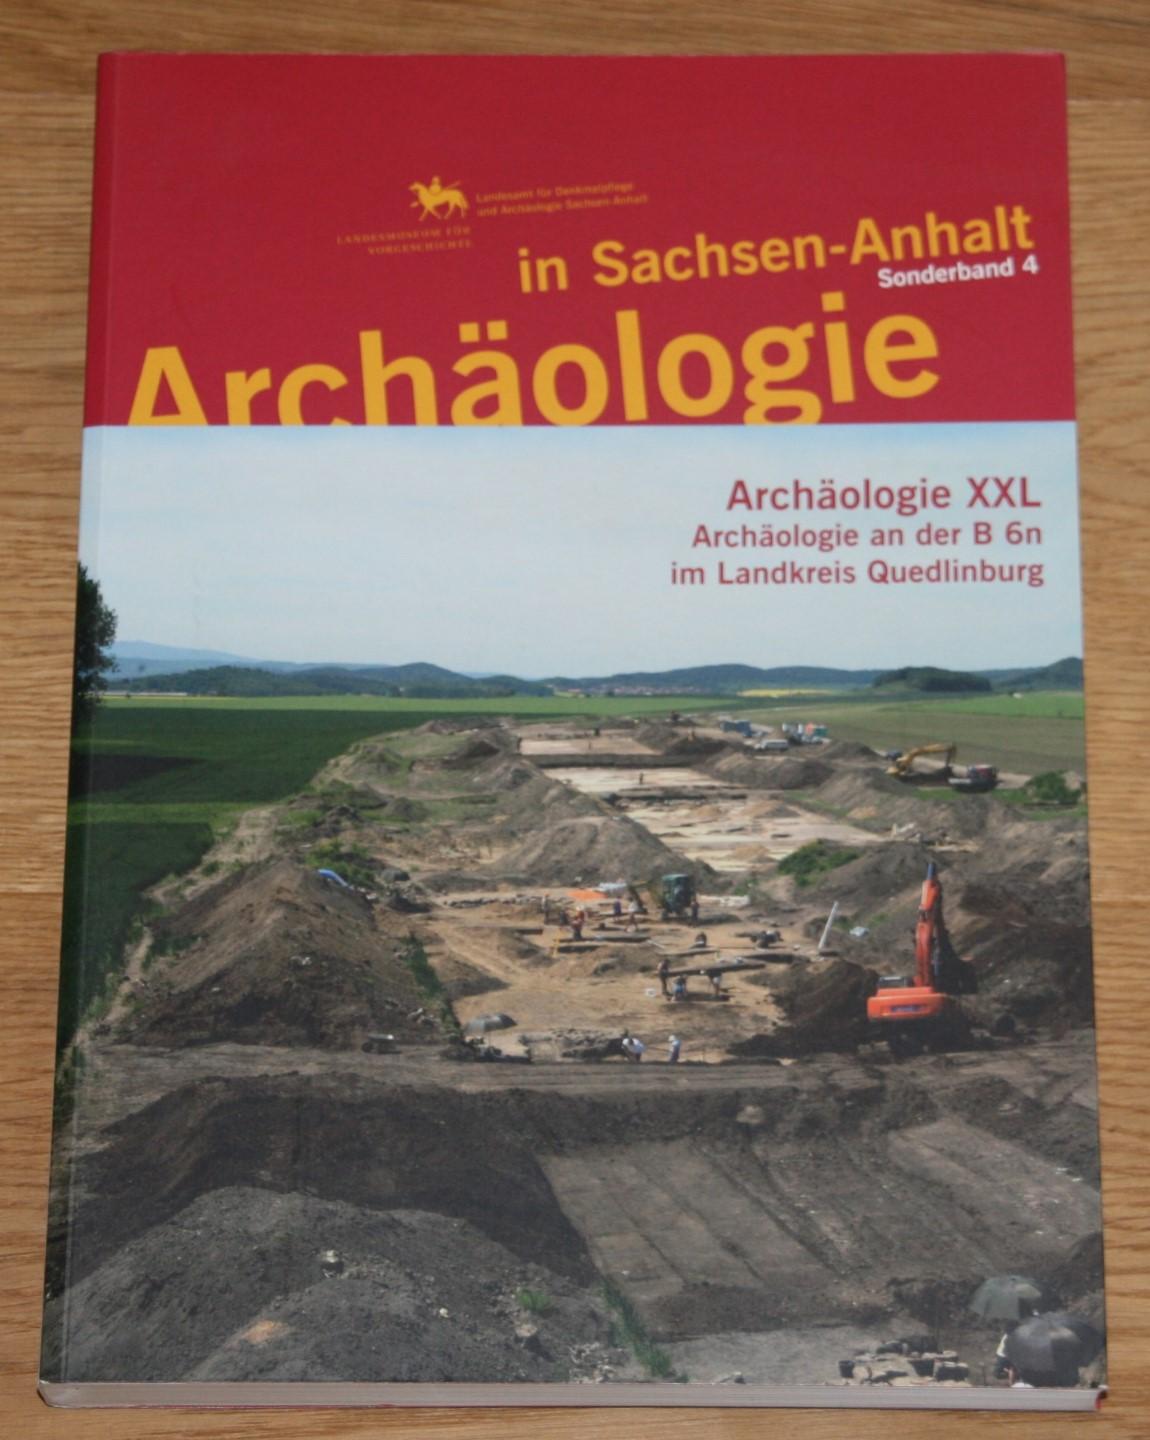 Archäologie in Sachsen-Anhalt / Archäologie XXL: Archäologie an der B6n im Landkreis Quedlinburg